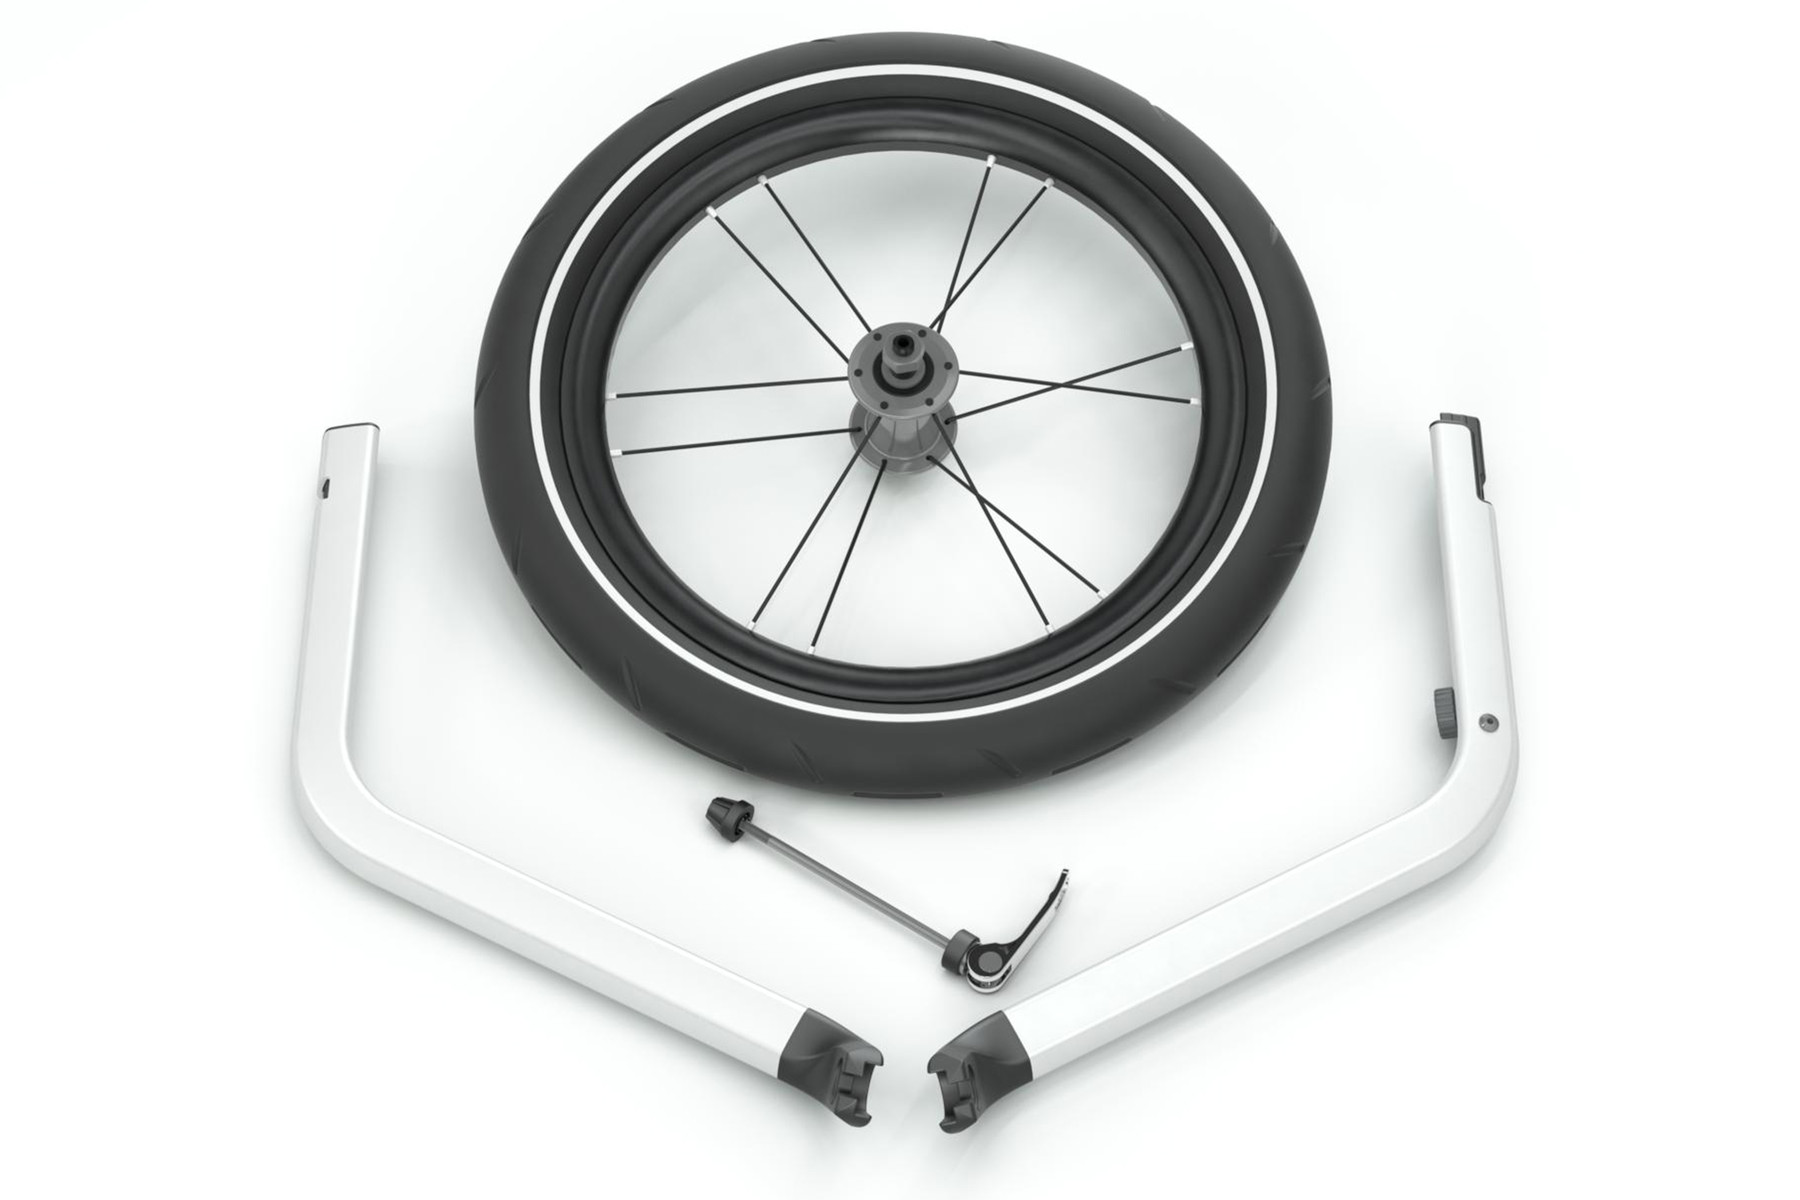 Thule Chariot Jog Kit 2 20201302